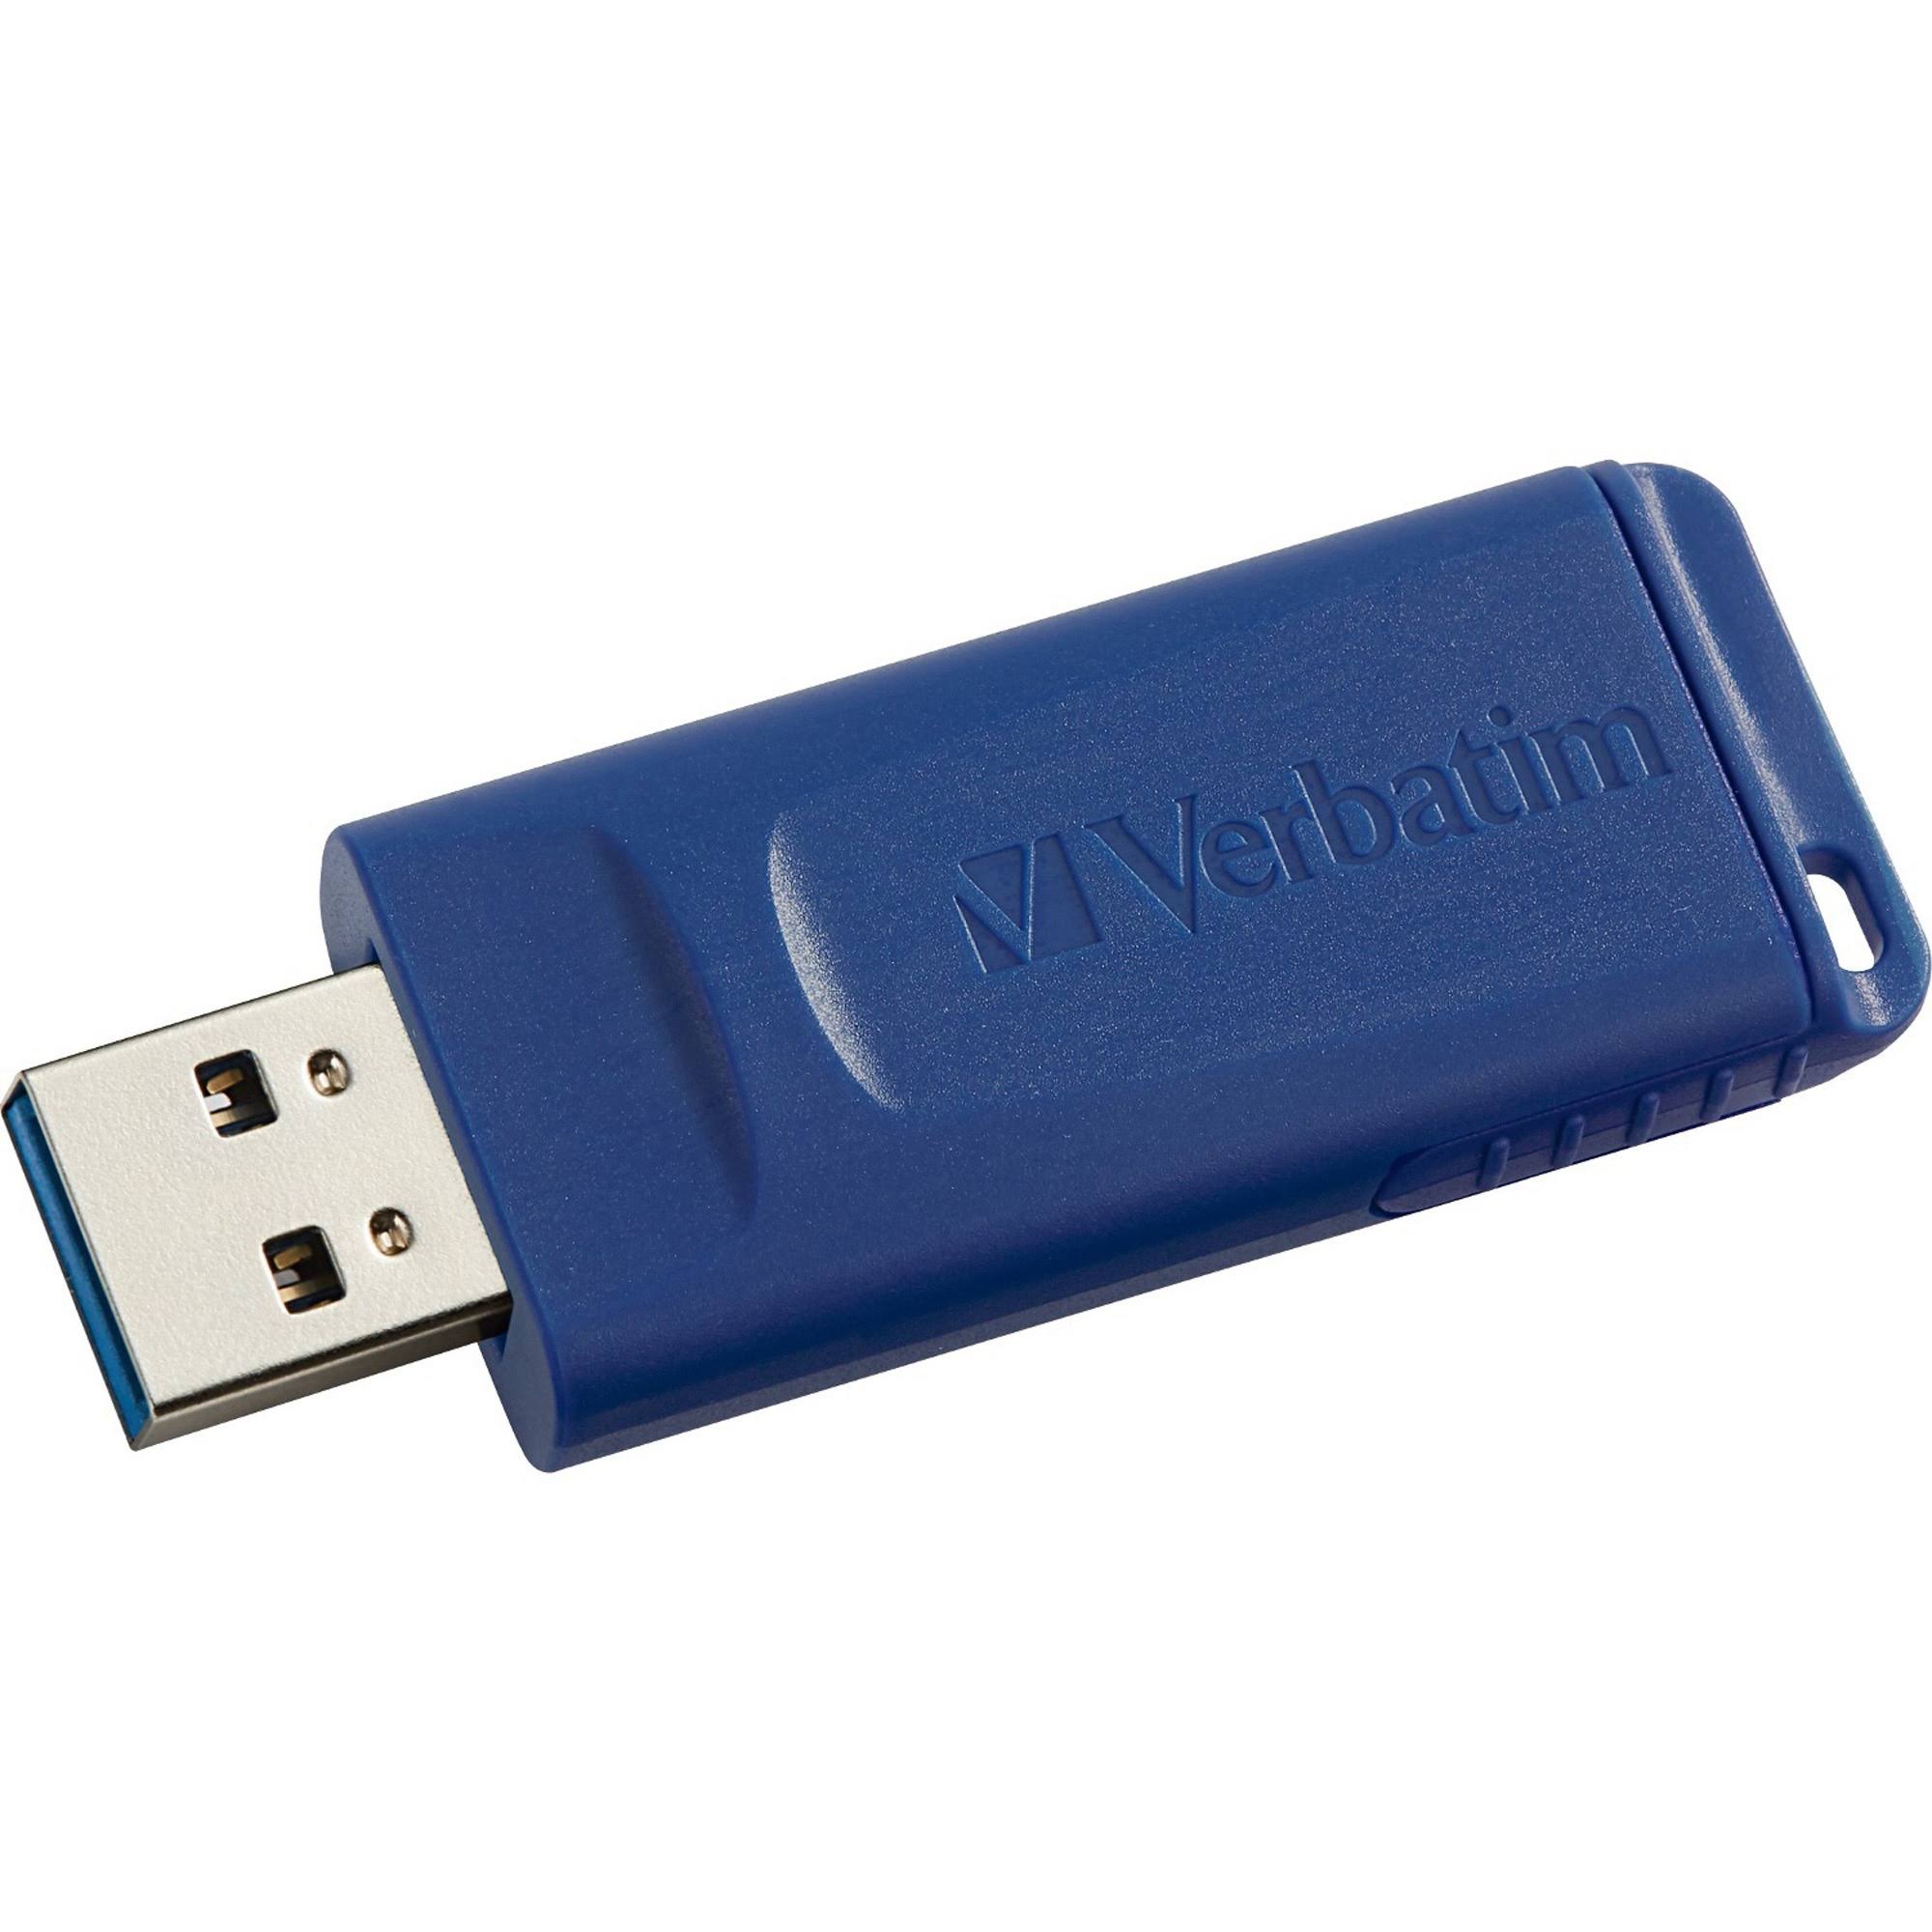 Verbatim 97408 USB Flash Drive - Blue, 32GB